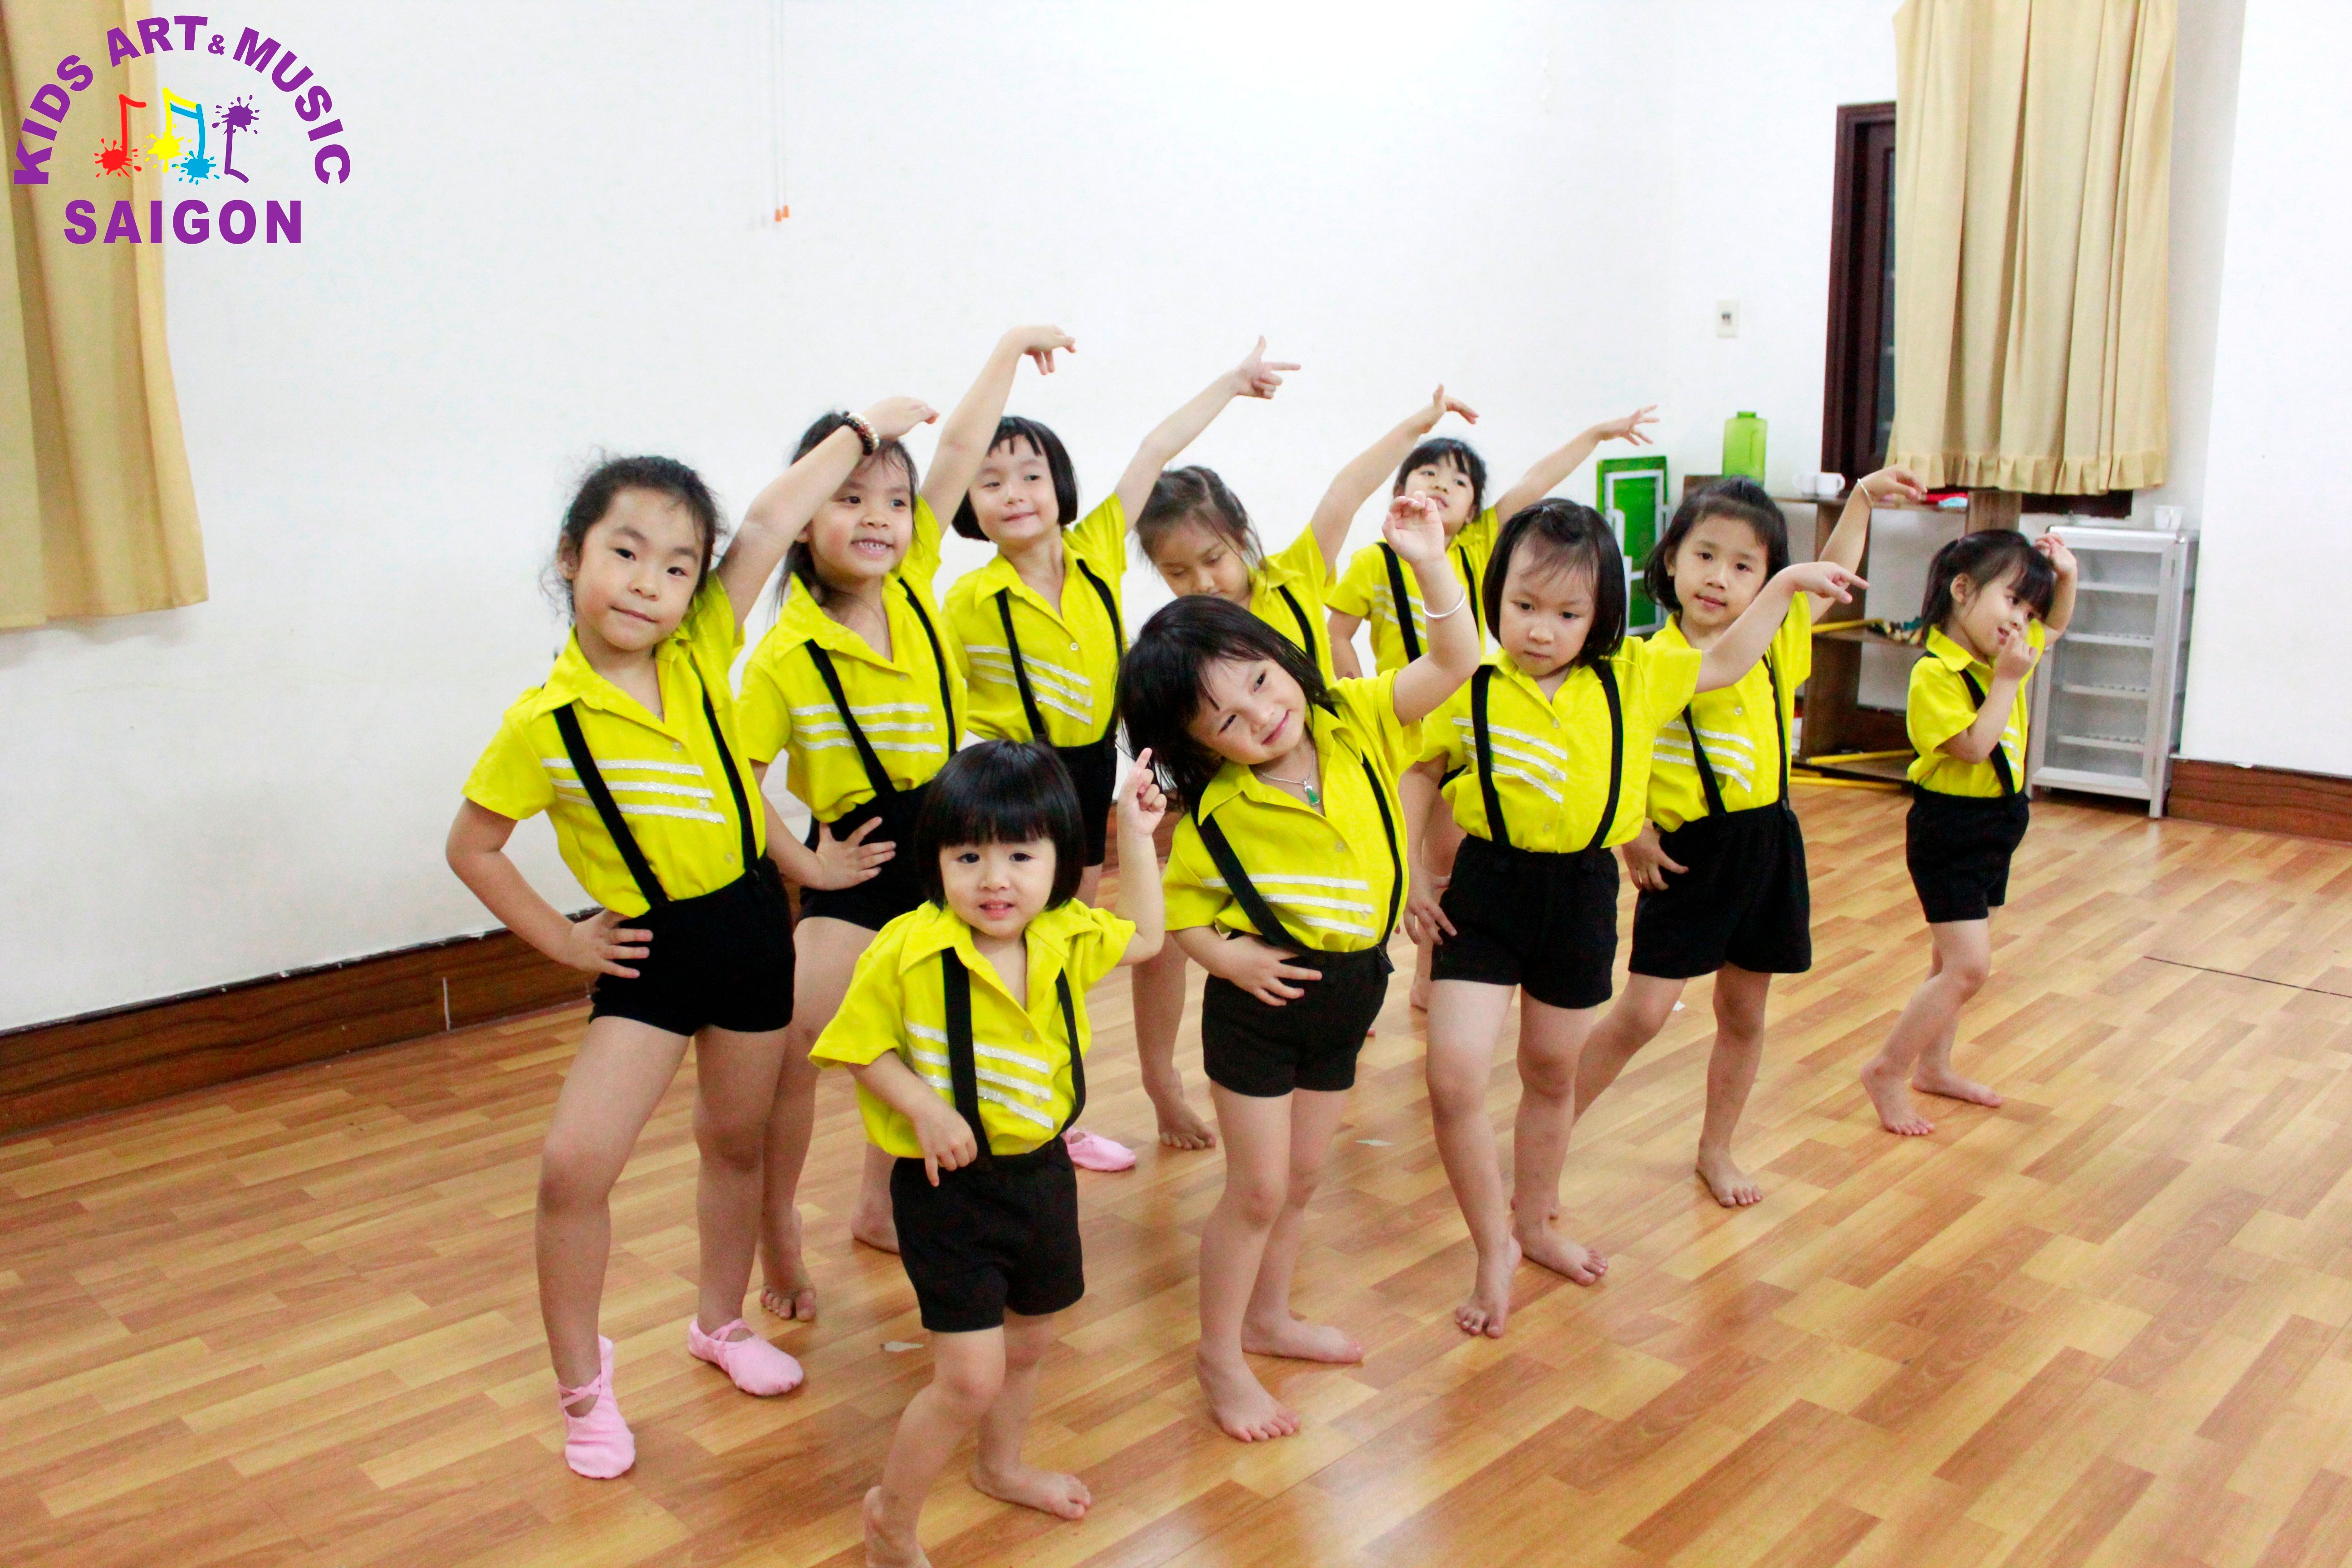 Kids art & Music Sai Gon - Nhà văn hóa thiếu nhi quận 1 ảnh 1